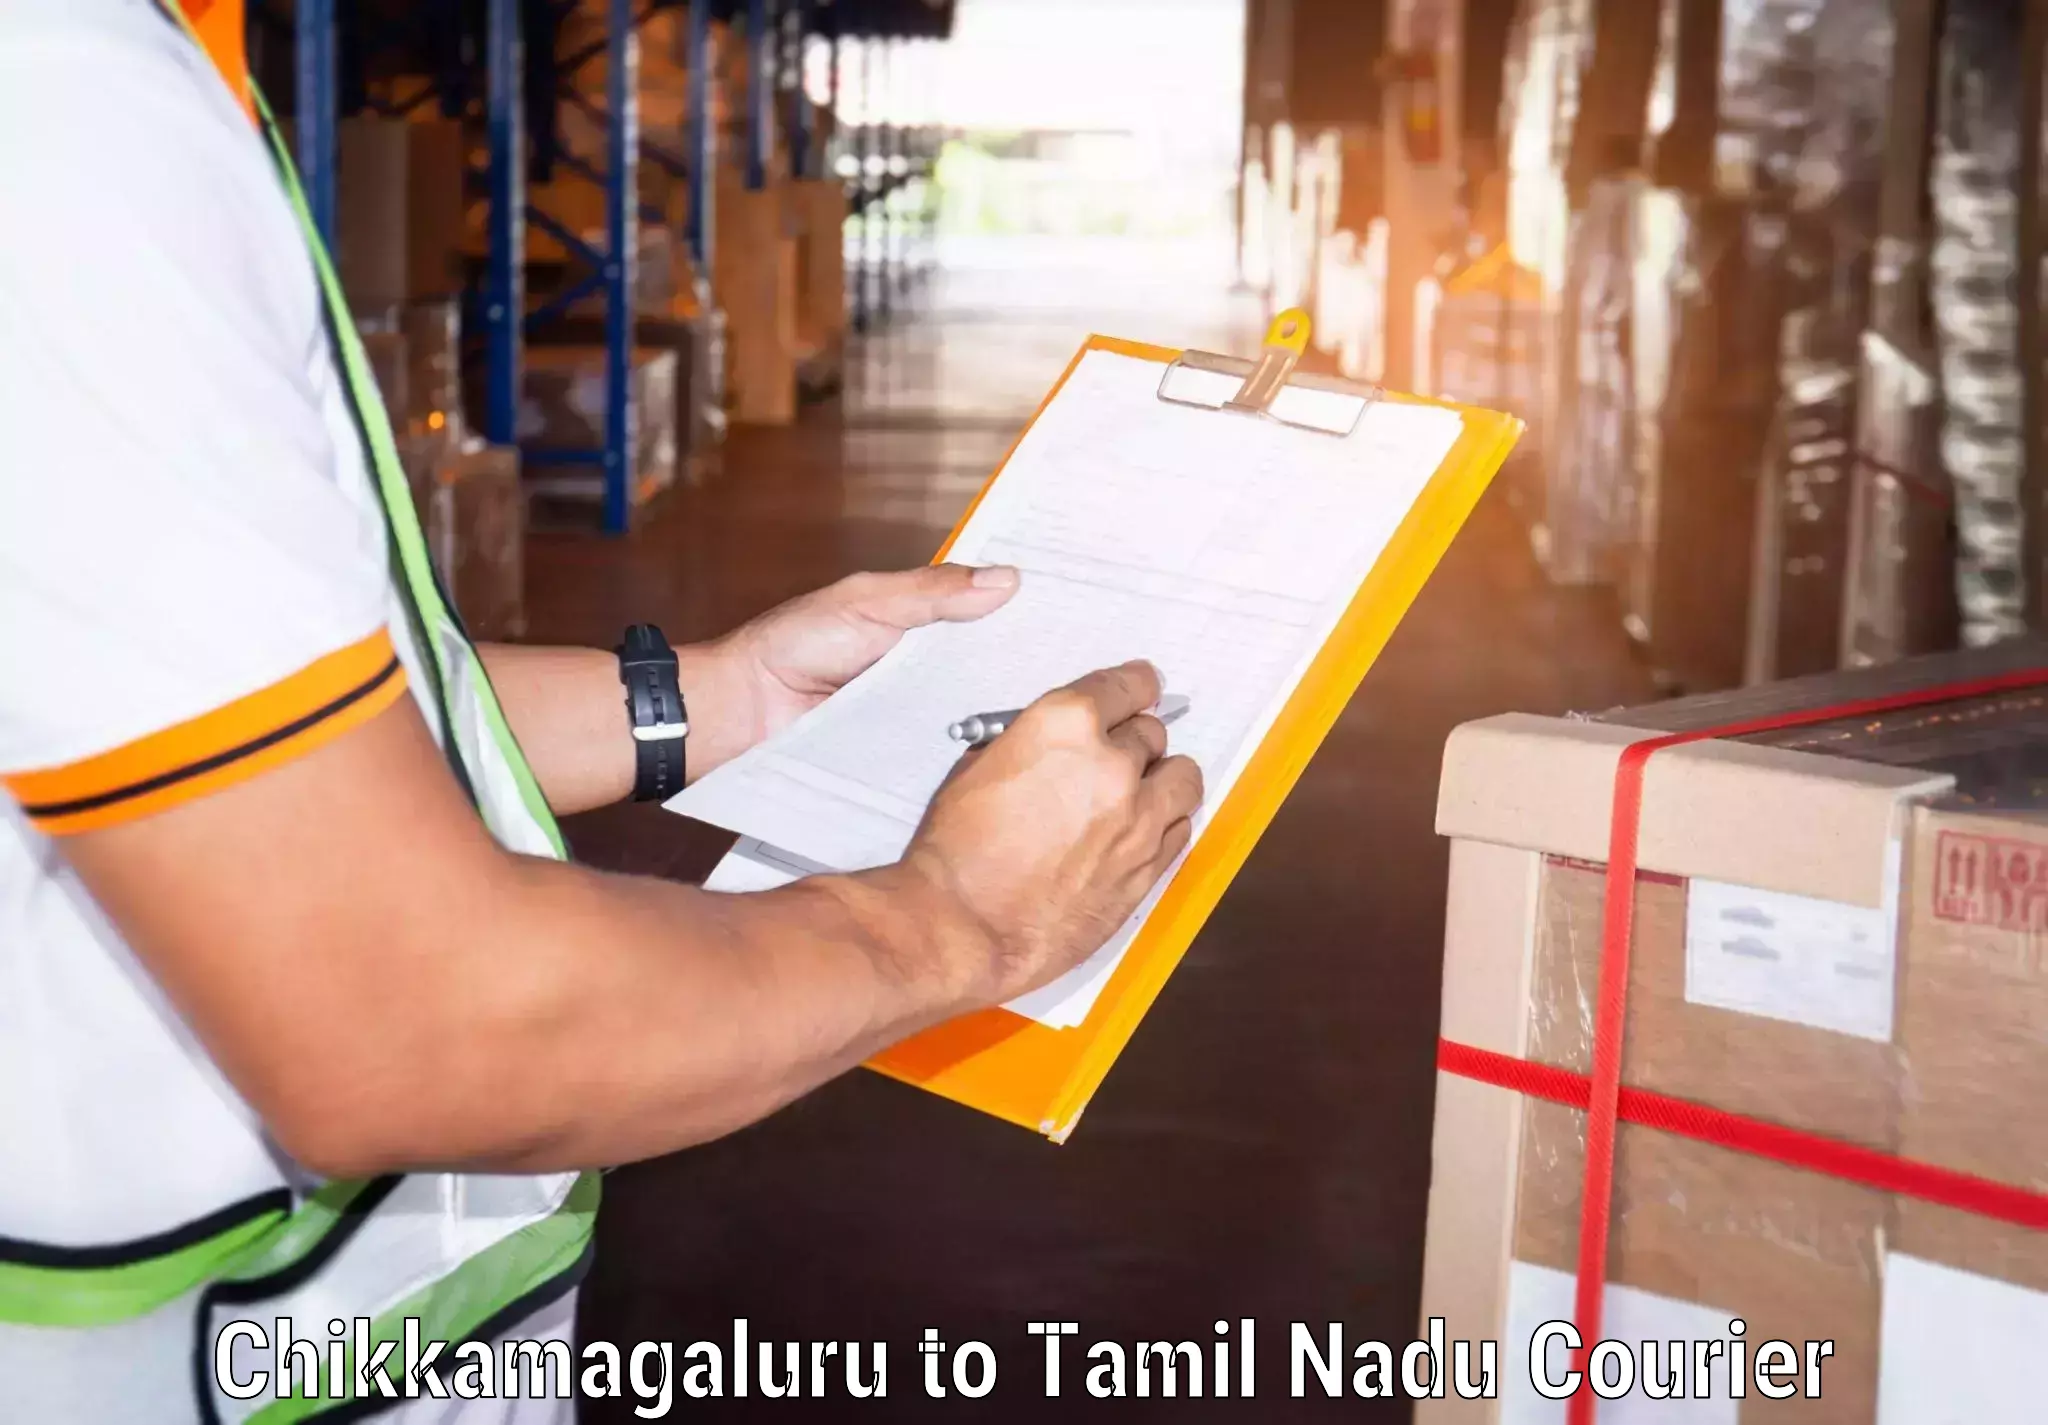 Customizable delivery plans Chikkamagaluru to Vickramasingapuram